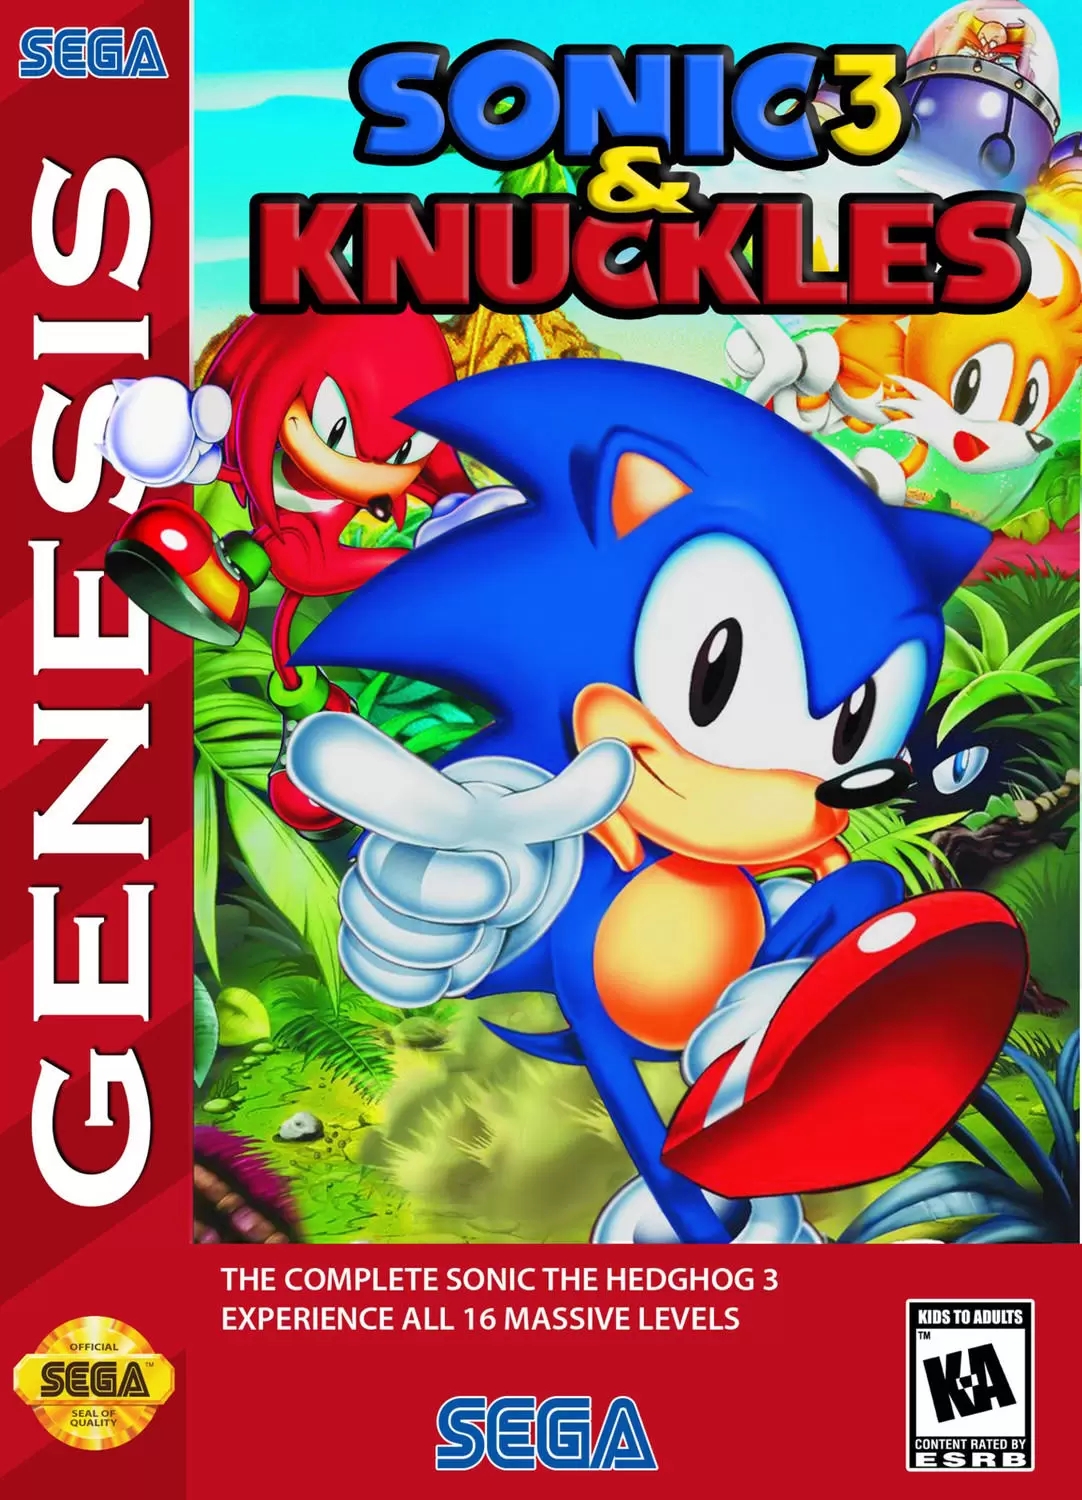 Sonic 3 & Knuckles - Full Game (As HYPER SONIC) 